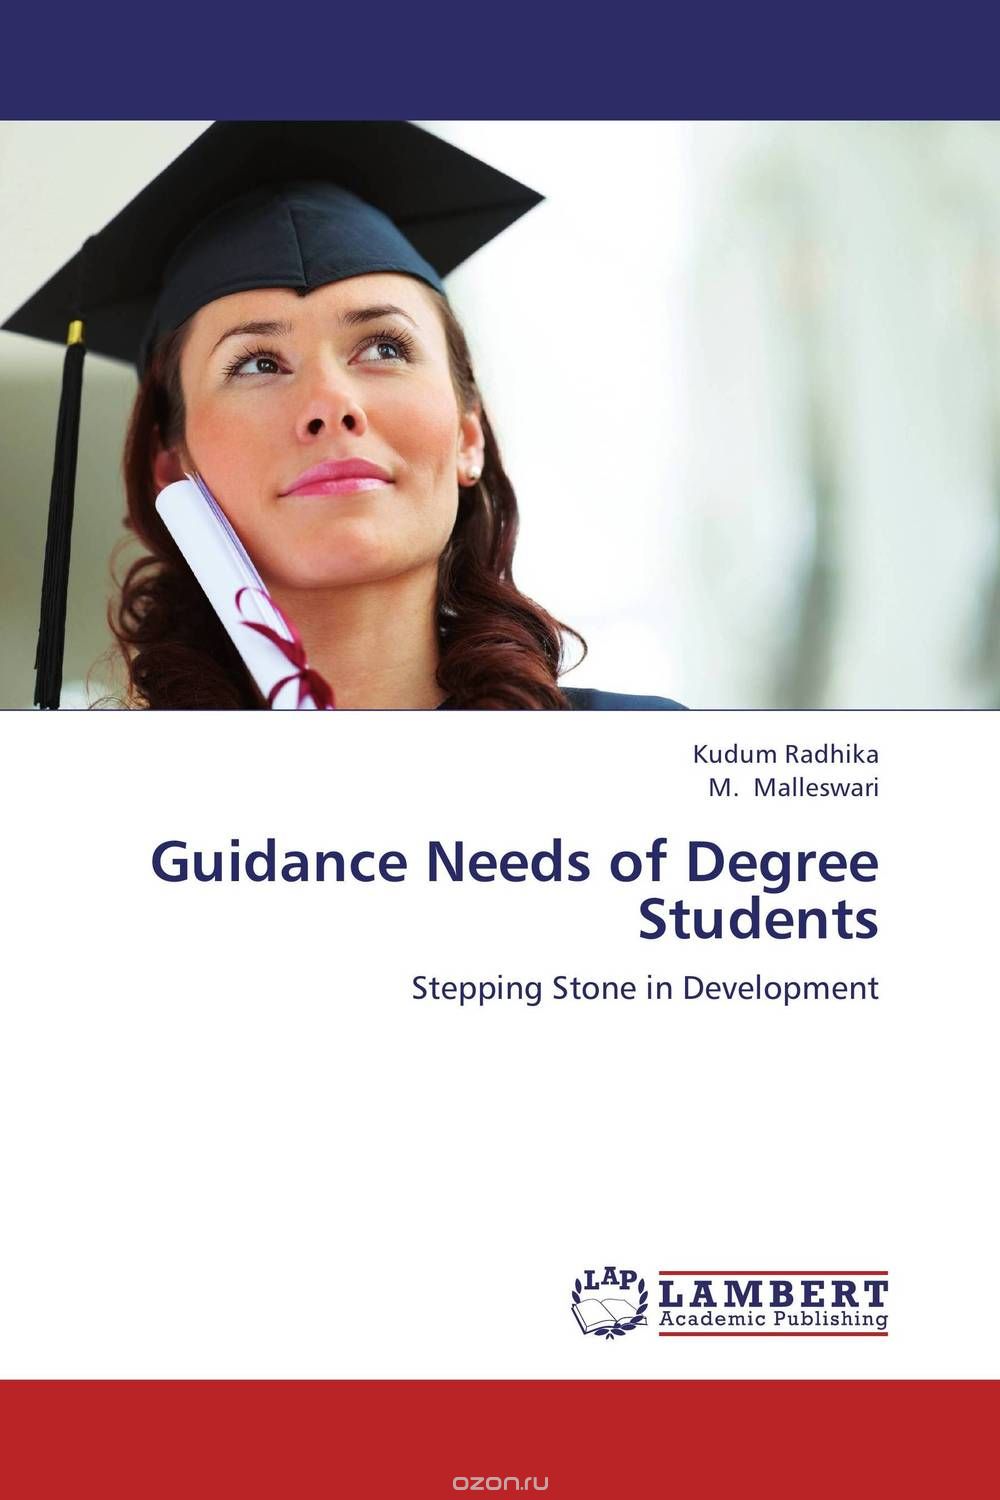 Скачать книгу "Guidance Needs of Degree Students"